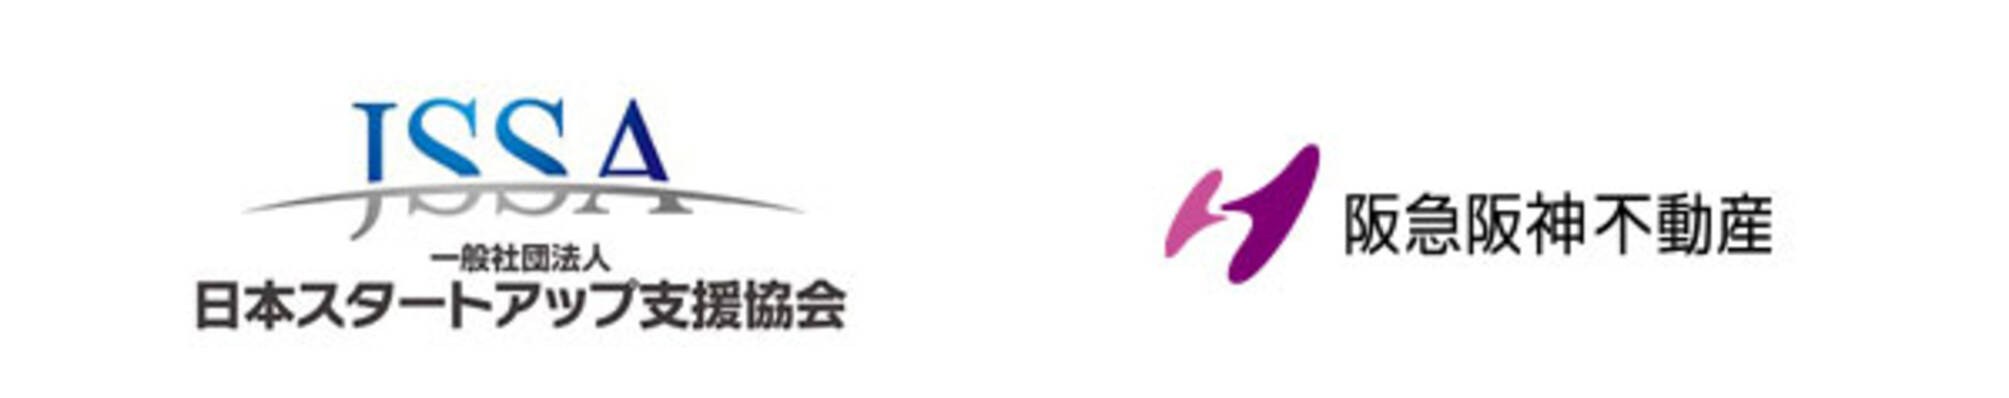 上場やm Aを目指すスタートアップ企業を支援する日本スタートアップ支援協会 Jssa とスタートアップとの共創を通じてお客さまへの新たな価値提供に取り組む阪急阪神不動産とが合同でピッチイベントを開催 19年10月15日 エキサイトニュース